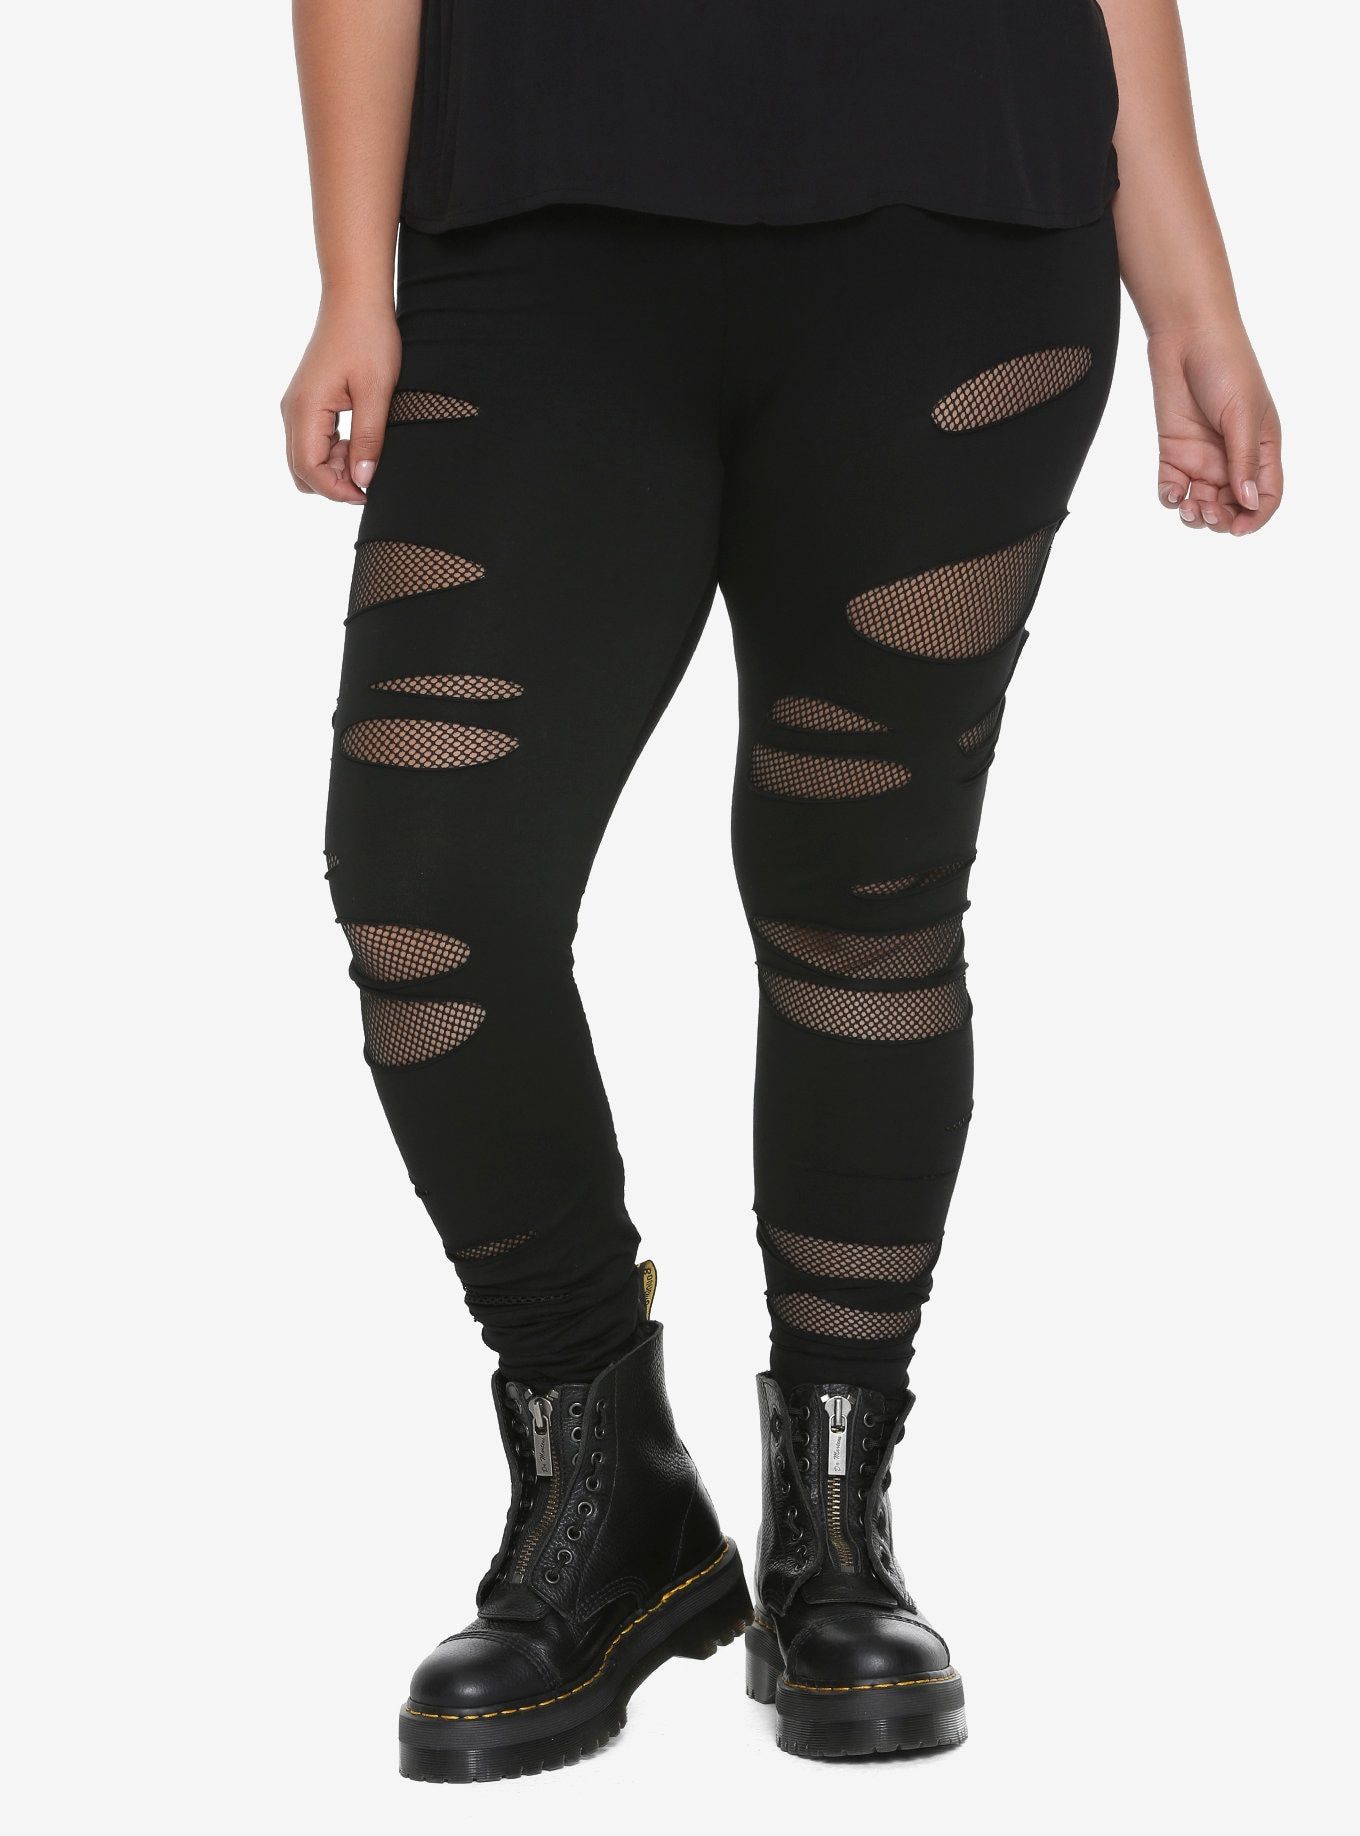 Black Fishnet Leggings Outfit